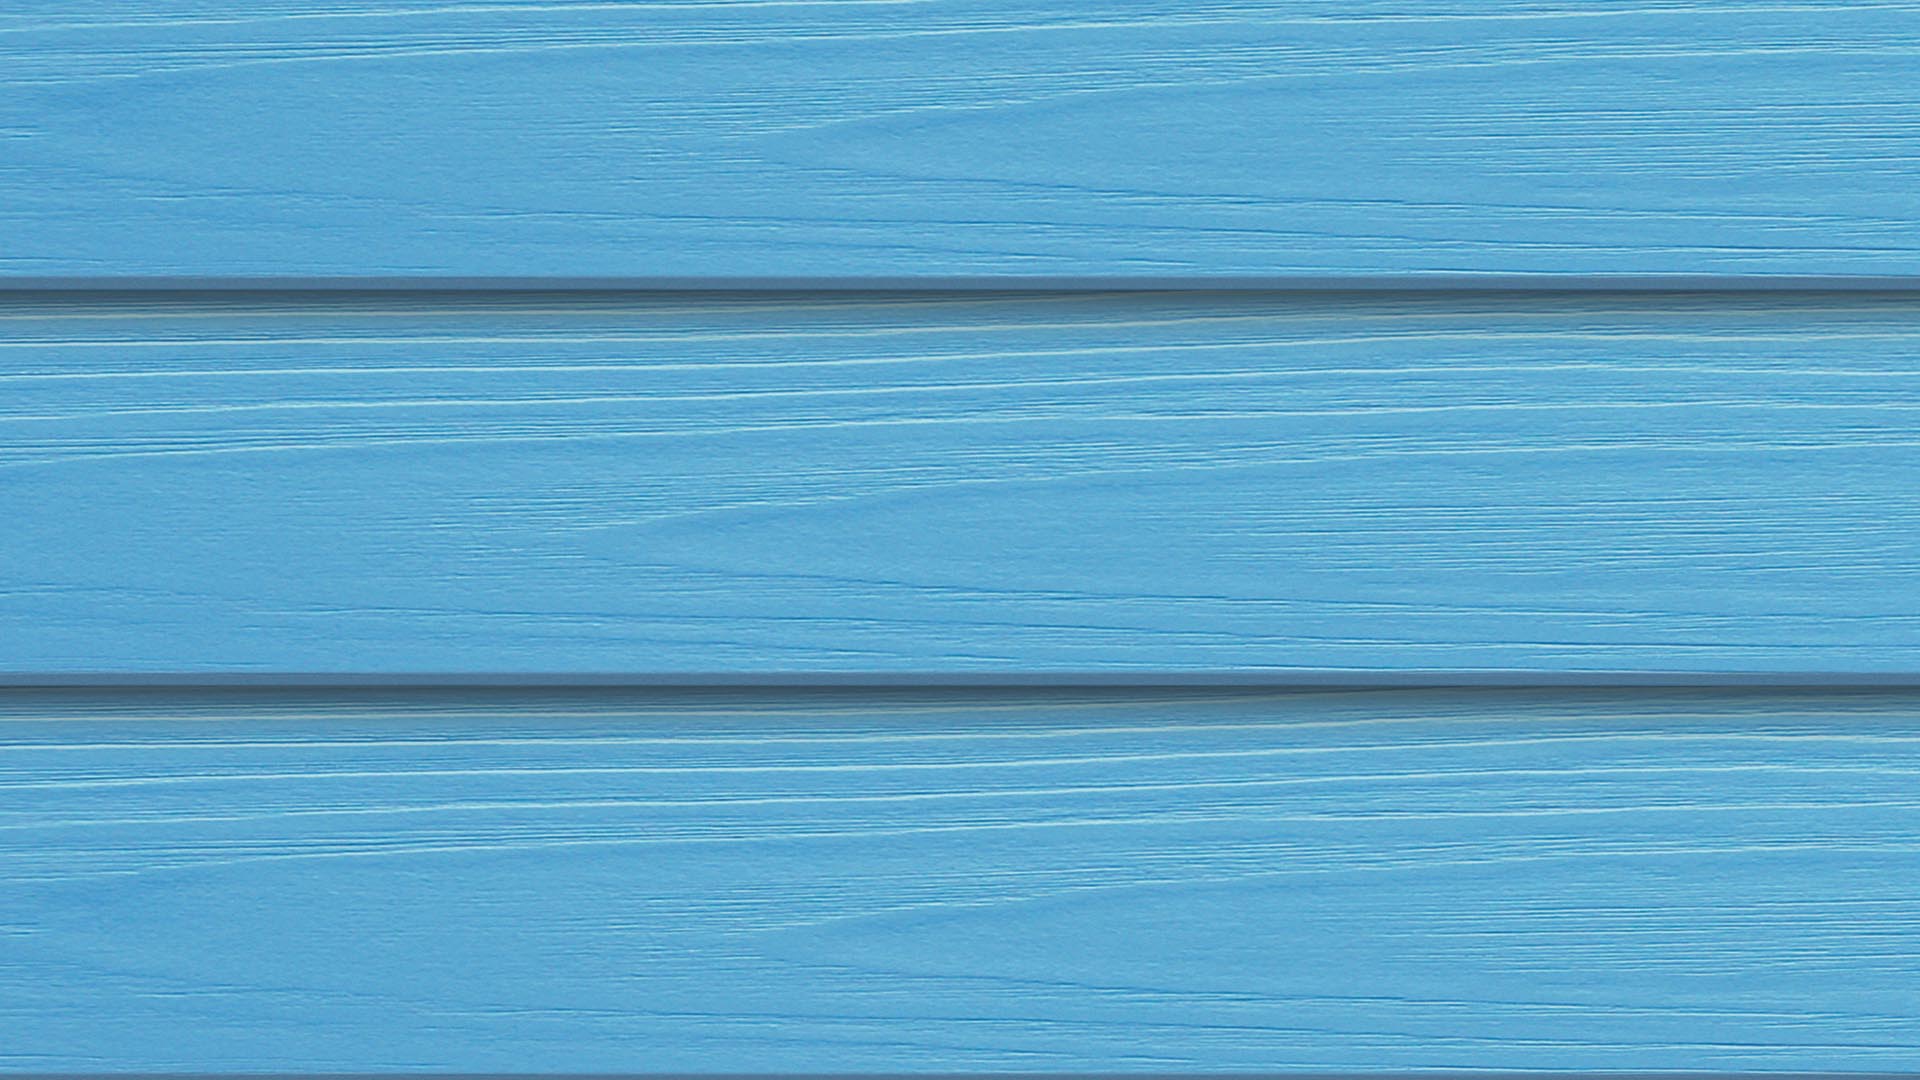 ไม้ฝา เอสซีจี รุ่นมาตรฐาน ขนาด 15X300X0.8 ซม. สีฟ้าใส